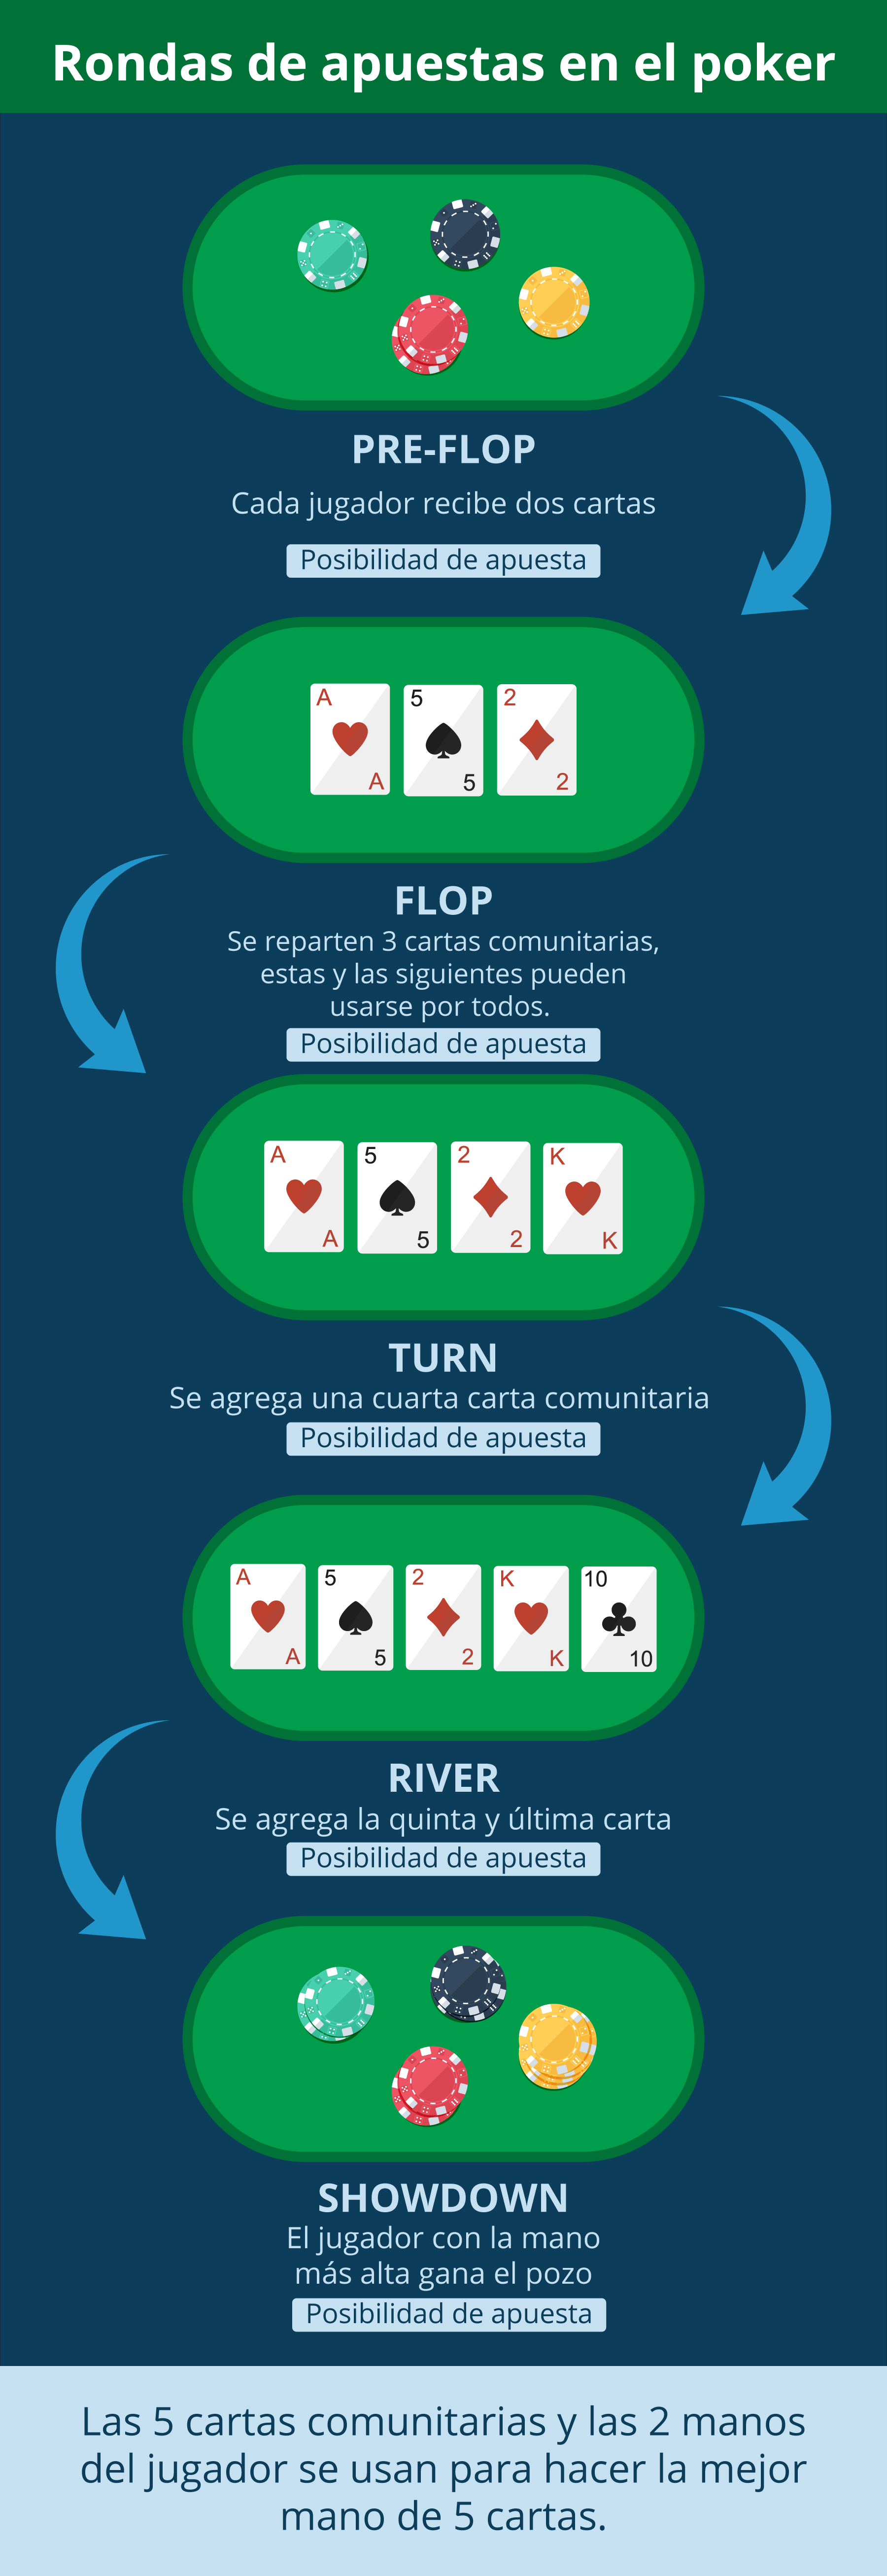 Rondas de apuestas de poker